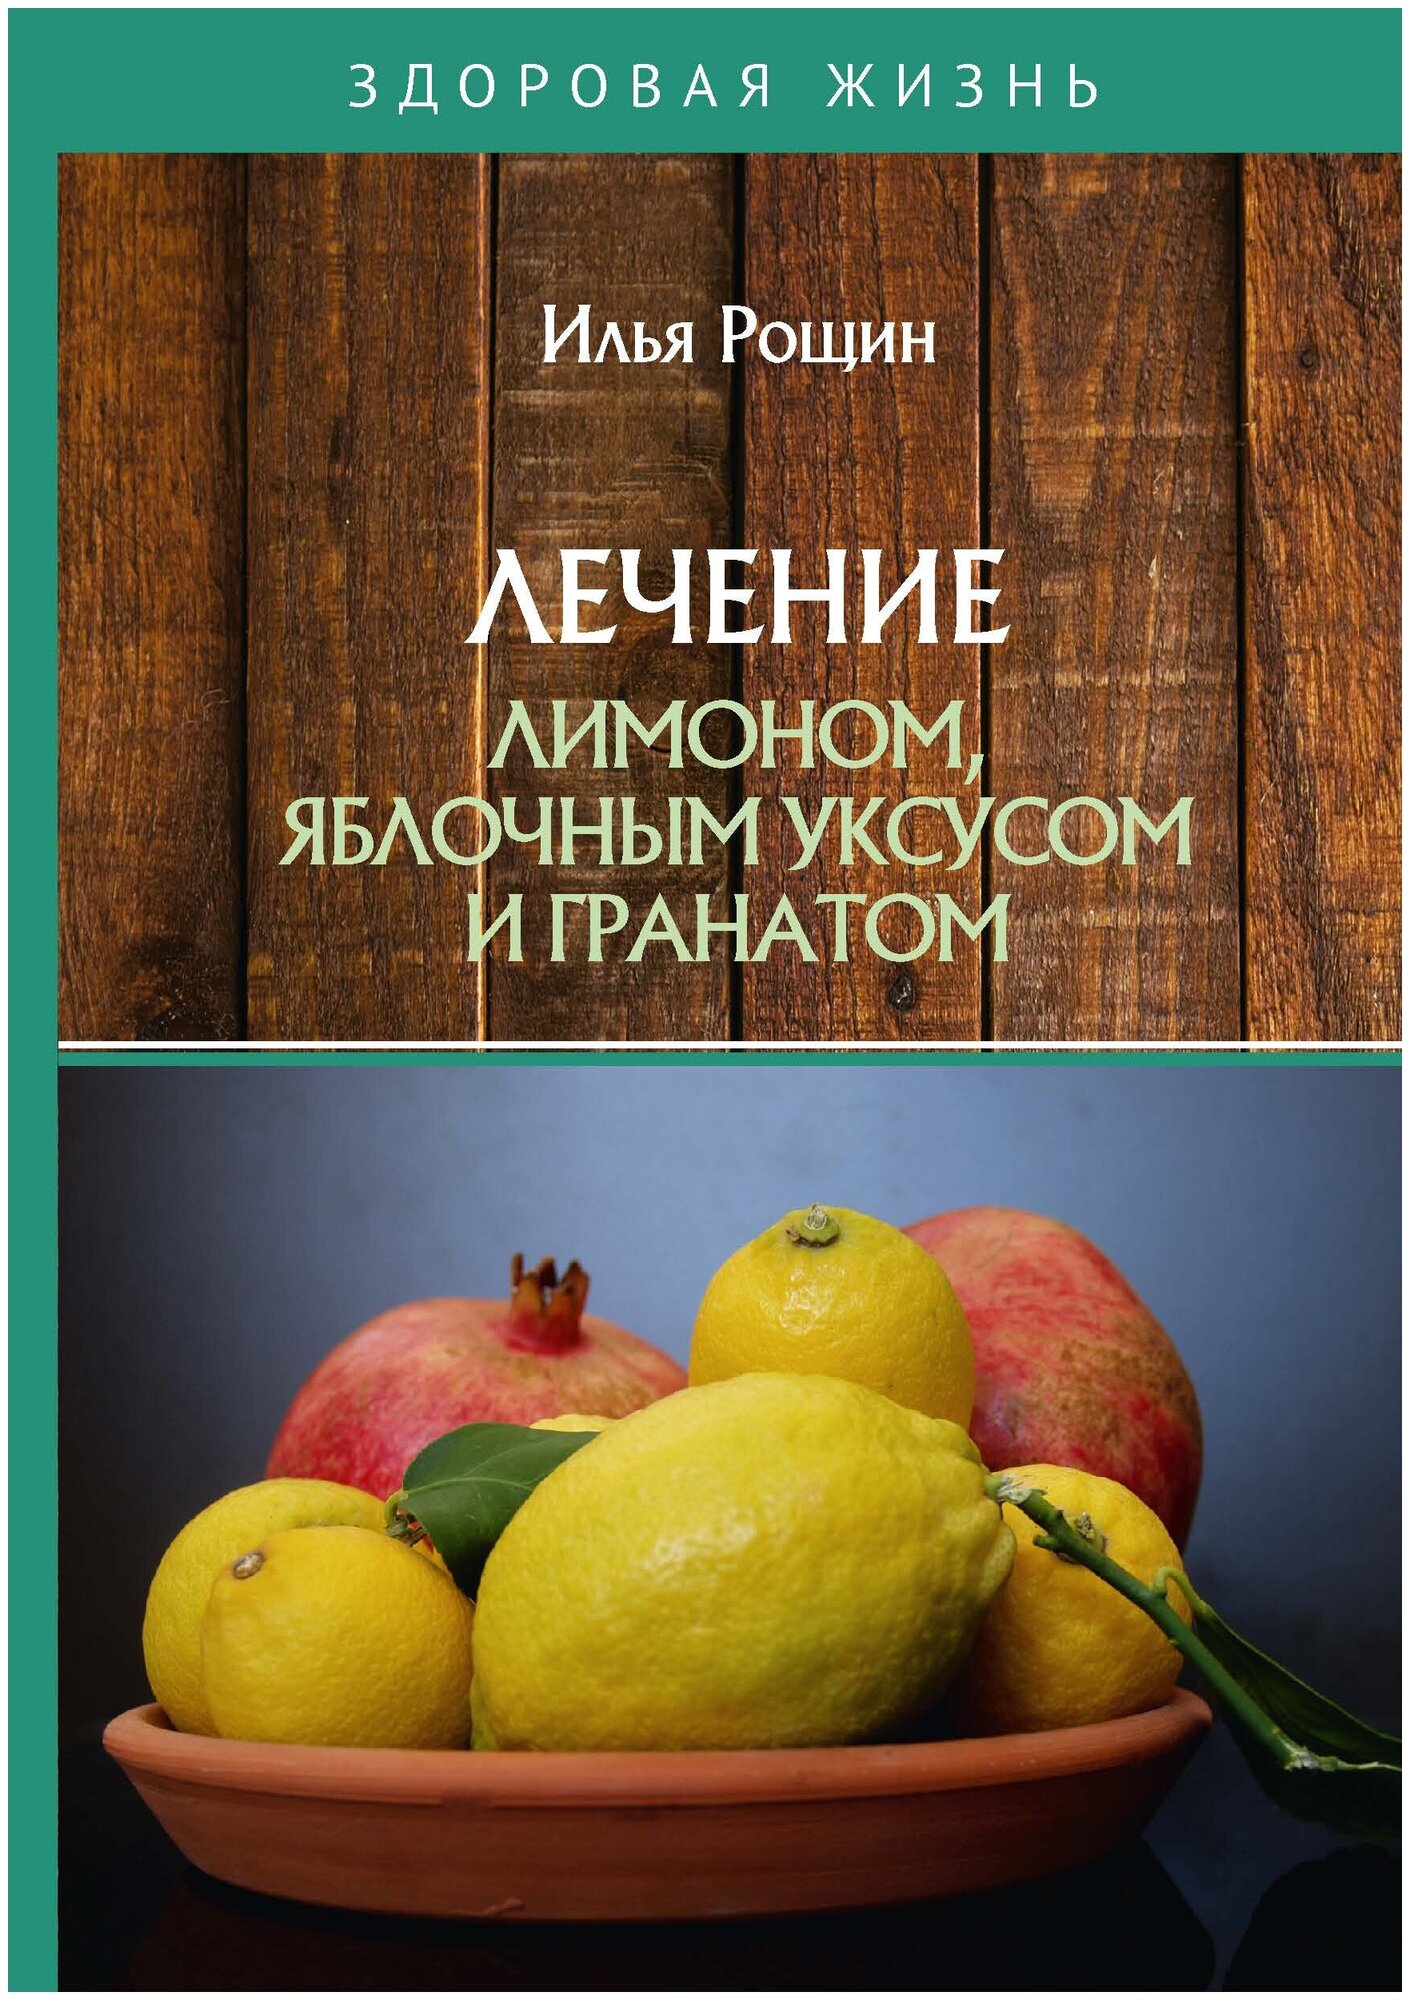 Лечение лимоном, яблочным уксусом и гранатом - фото №1